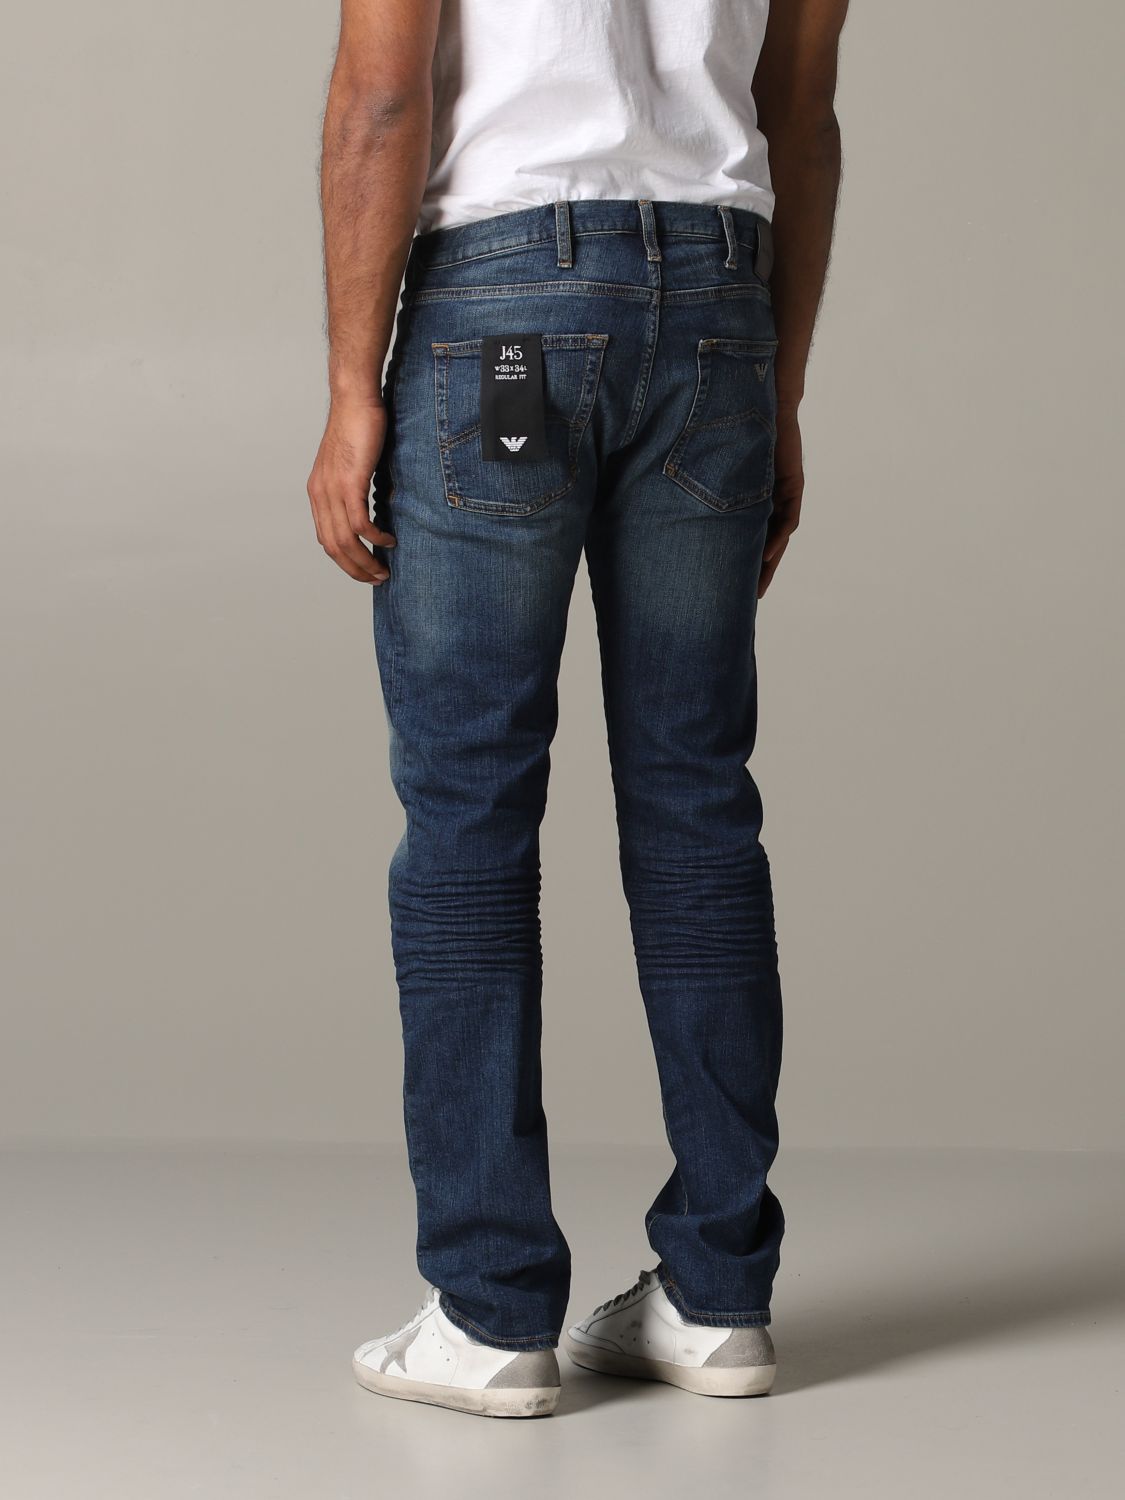 emporio armani jeans mens